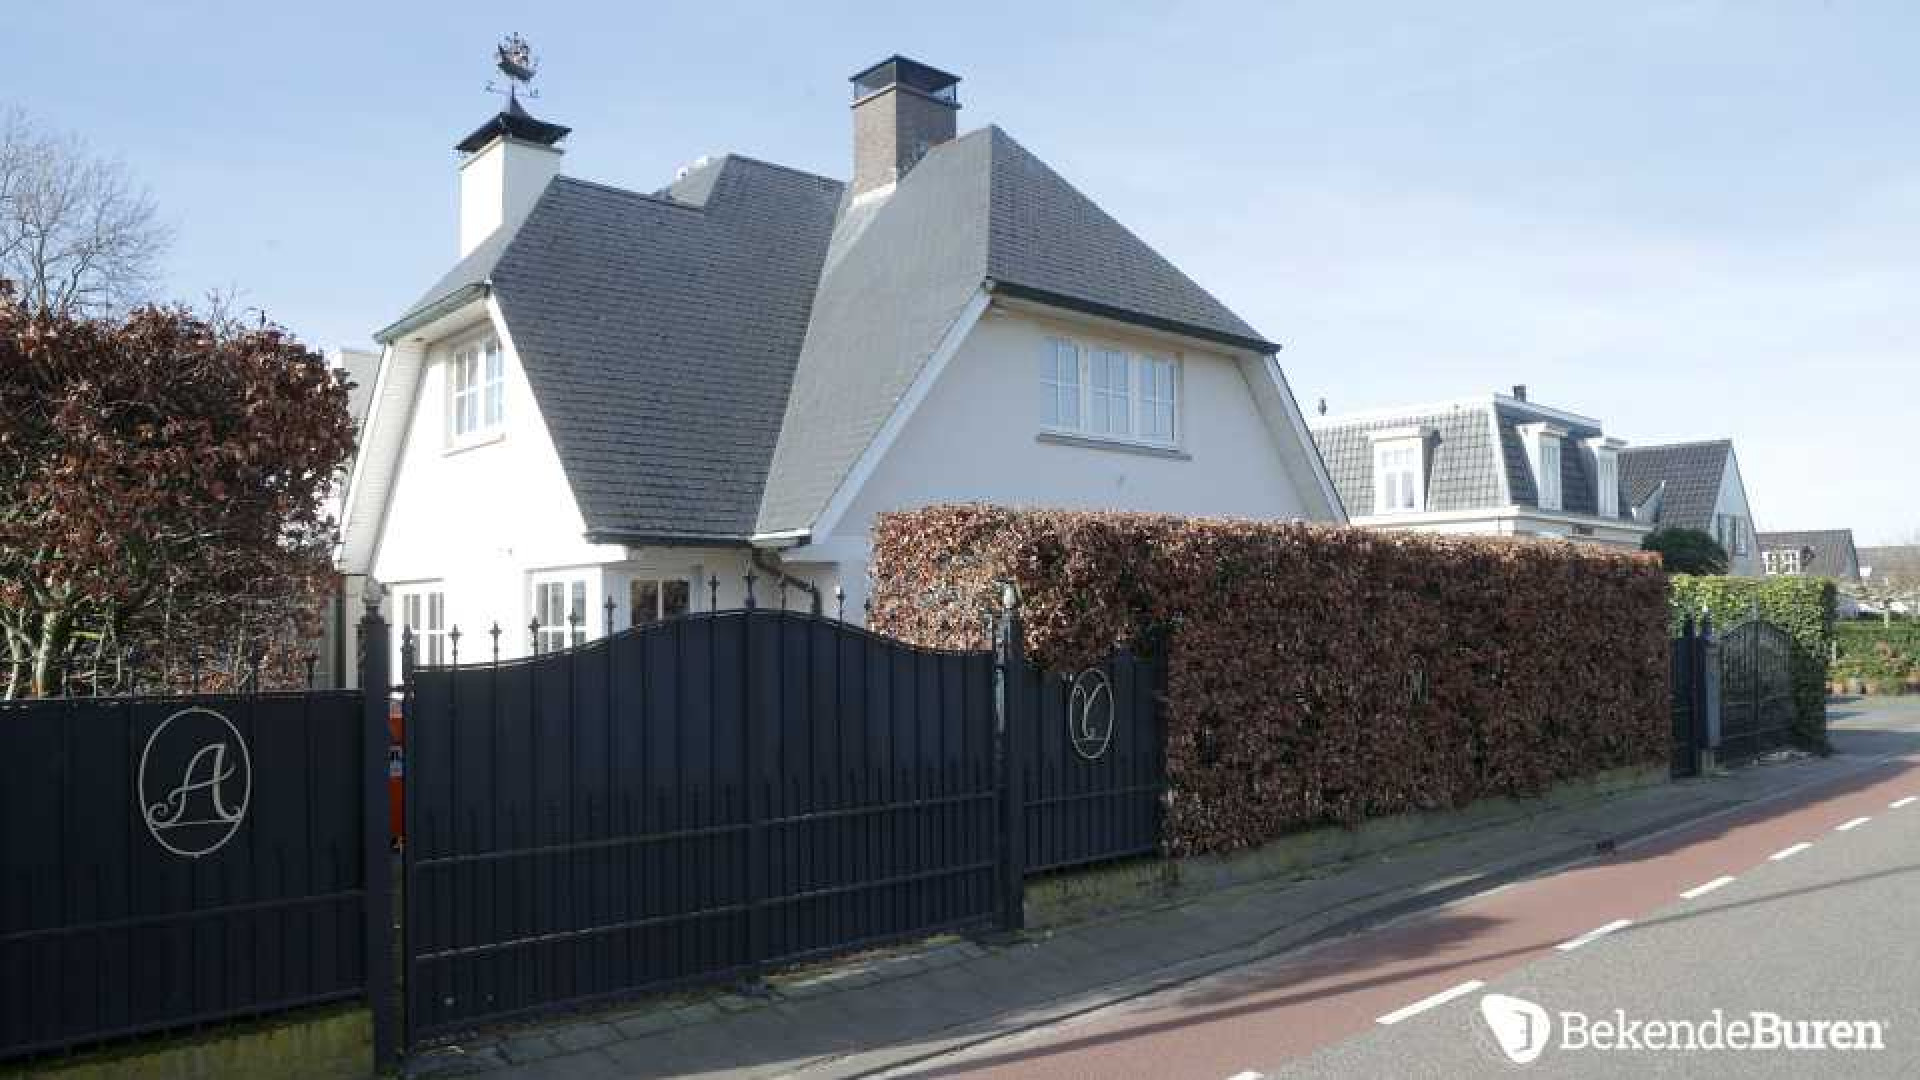 Villa prins Maurits aan de Loosdrechtse Plassen wordt flink verbouwd. Zie foto's  2